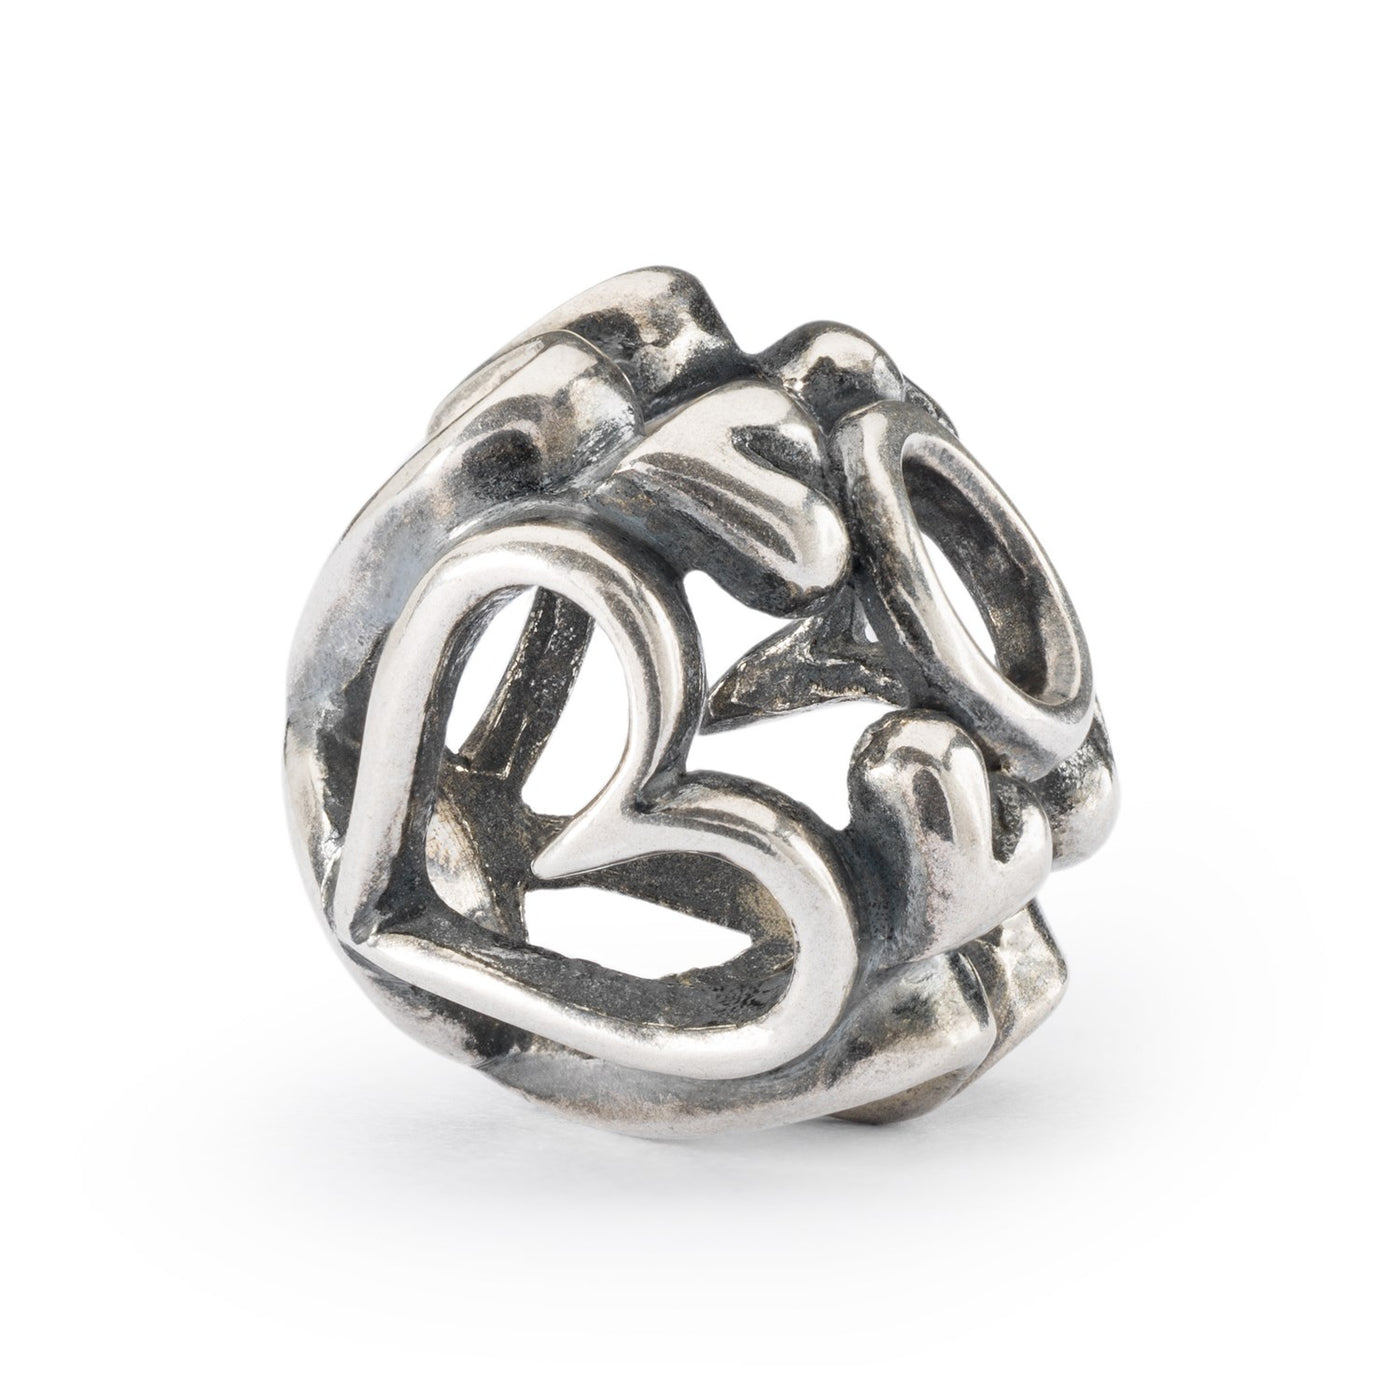 Hjertevenner vedhæng - Et charmerende og romantisk sølvvedhæng med hjerter forbundet, hvilket symboliserer kærlighed og omsorg.